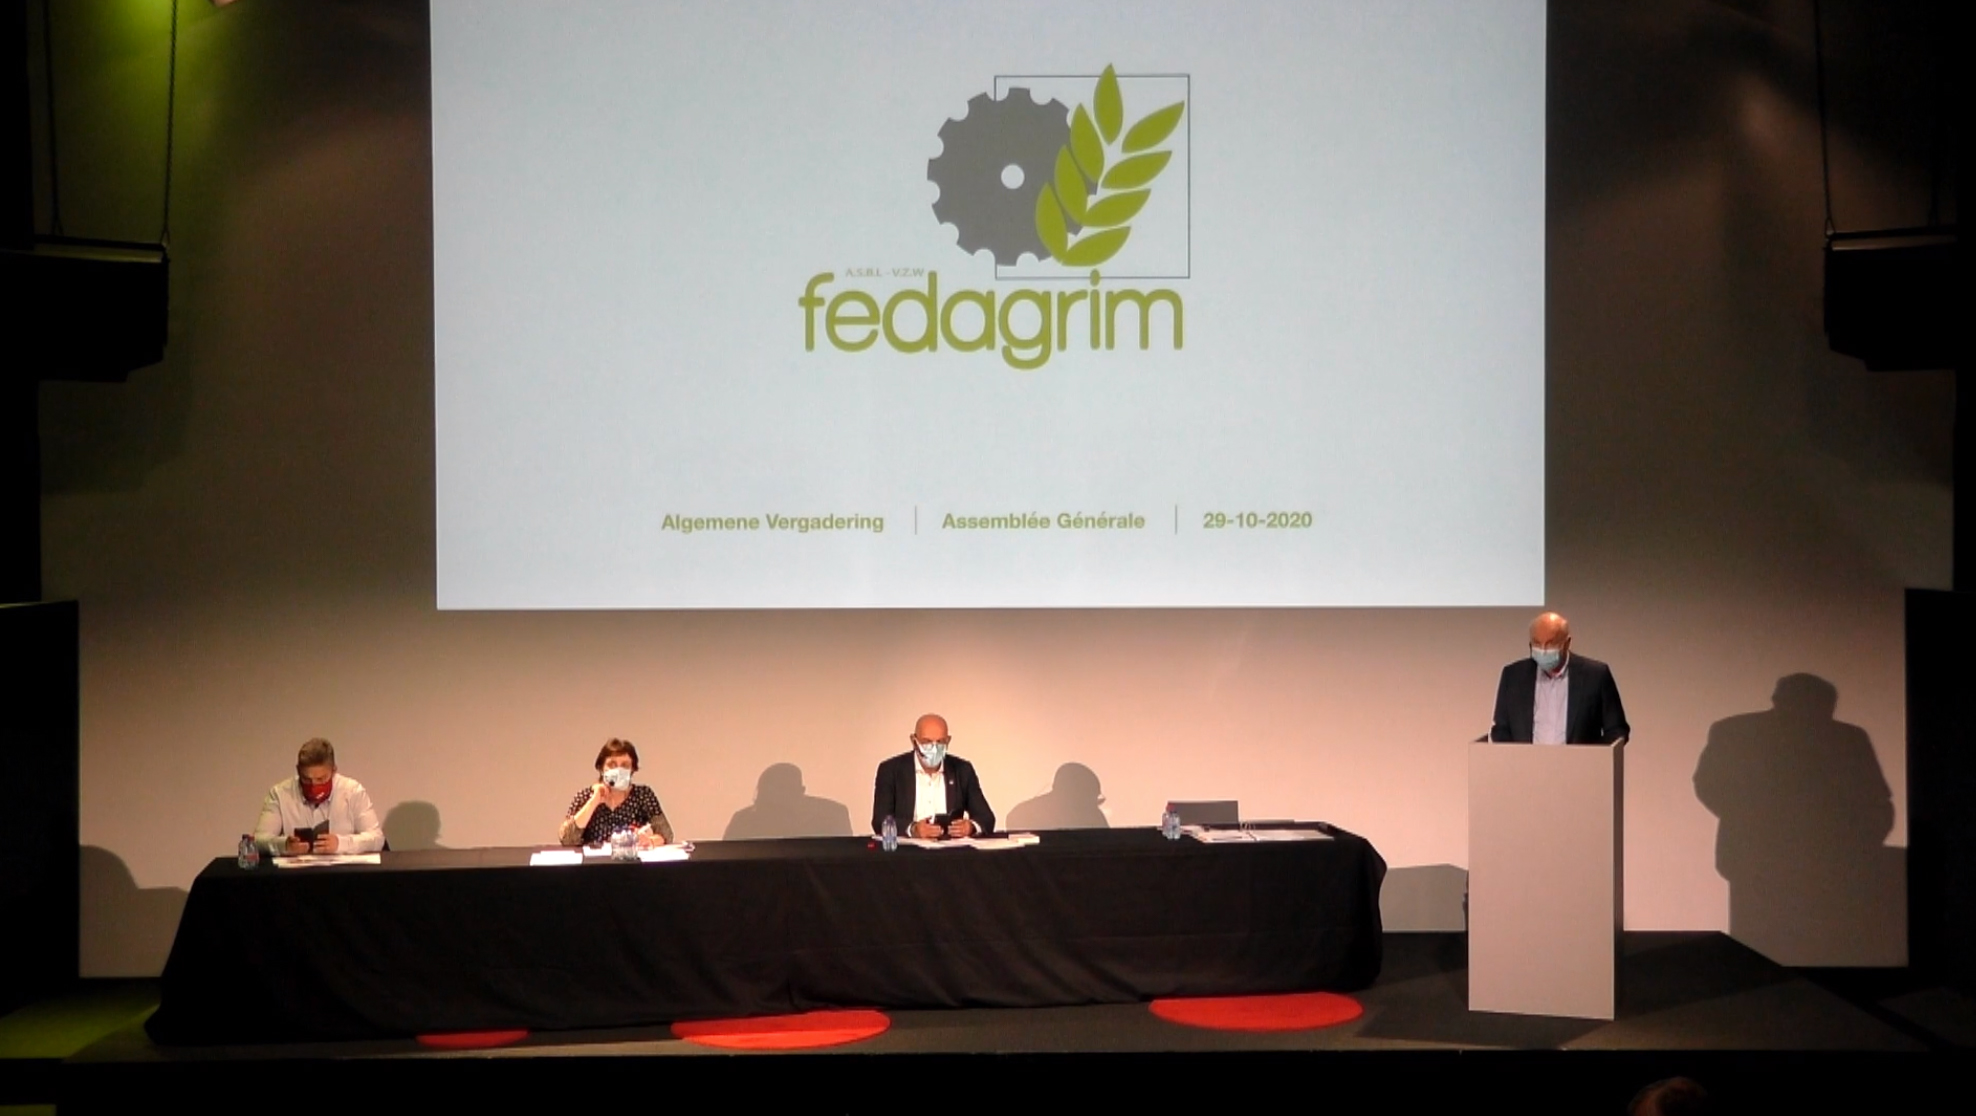 Fedagrim – Algemene Vergadering